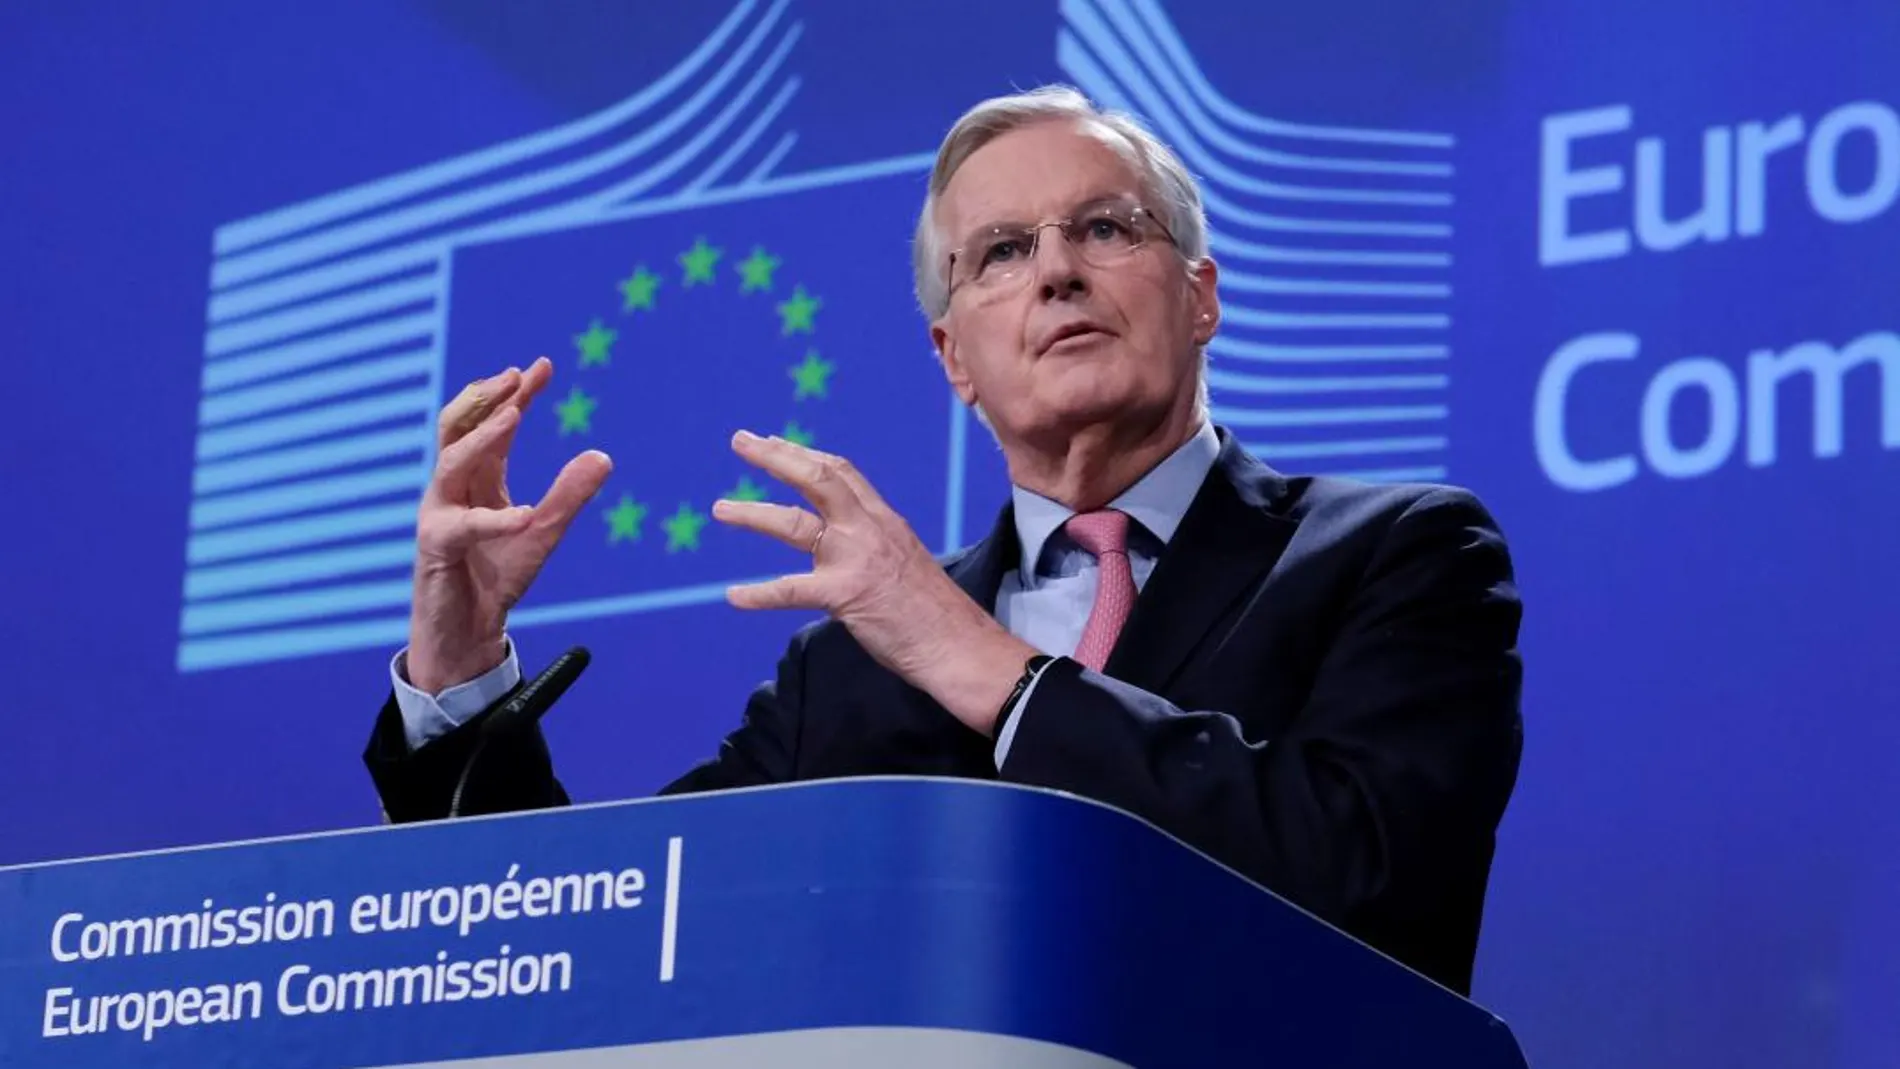 El negociador jefe de la Unión Europea para el "brexit", Michel Barnier, da una rueda de prensa tras finalizar una ronda de negociaciones sobre el "brexit"en la Comisión Europea